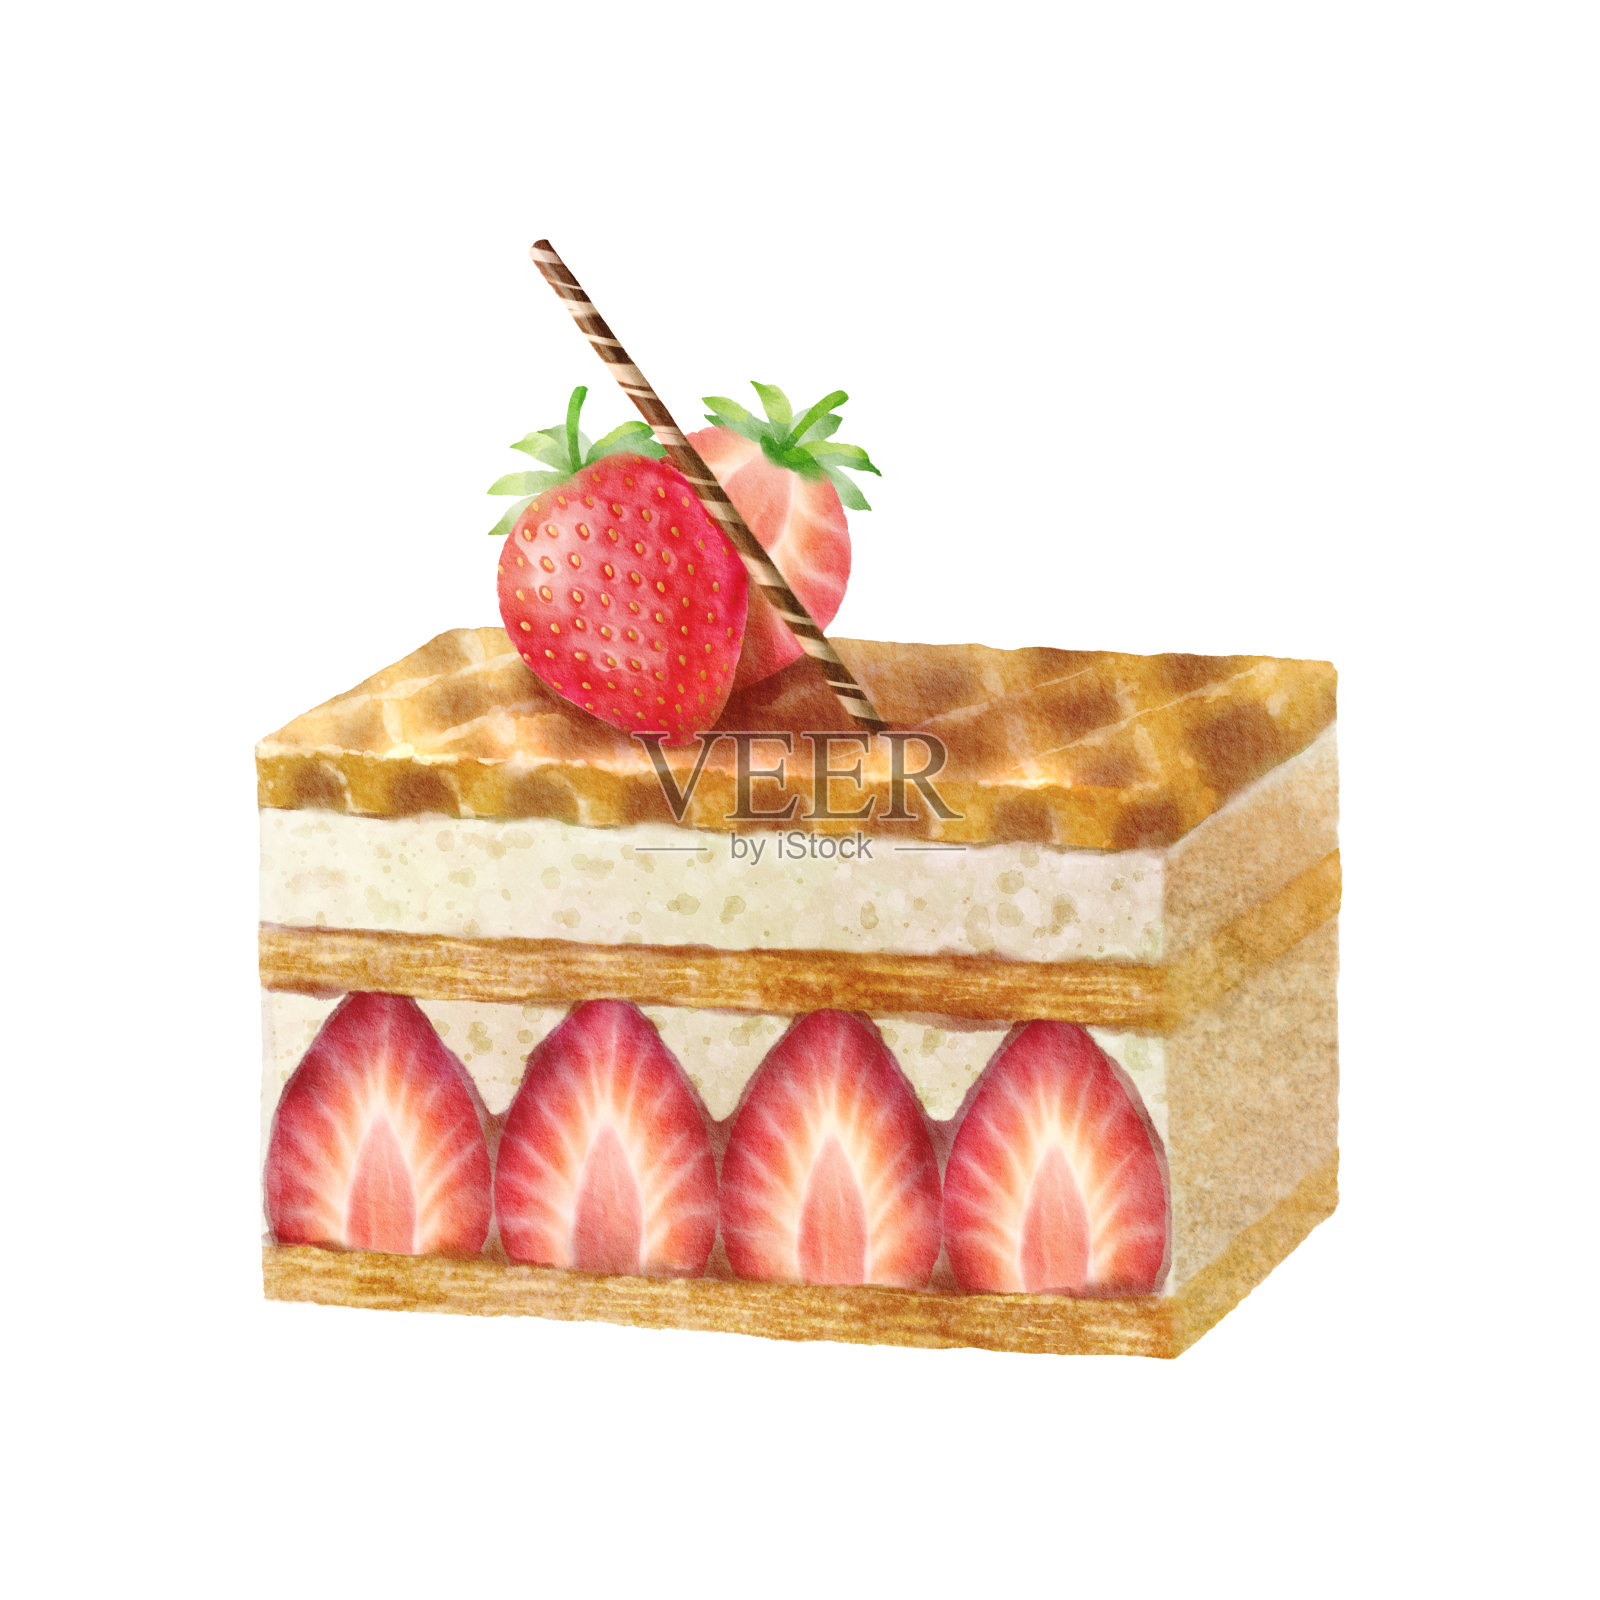 草莓拿破仑--诺心LE CAKE蛋糕官网